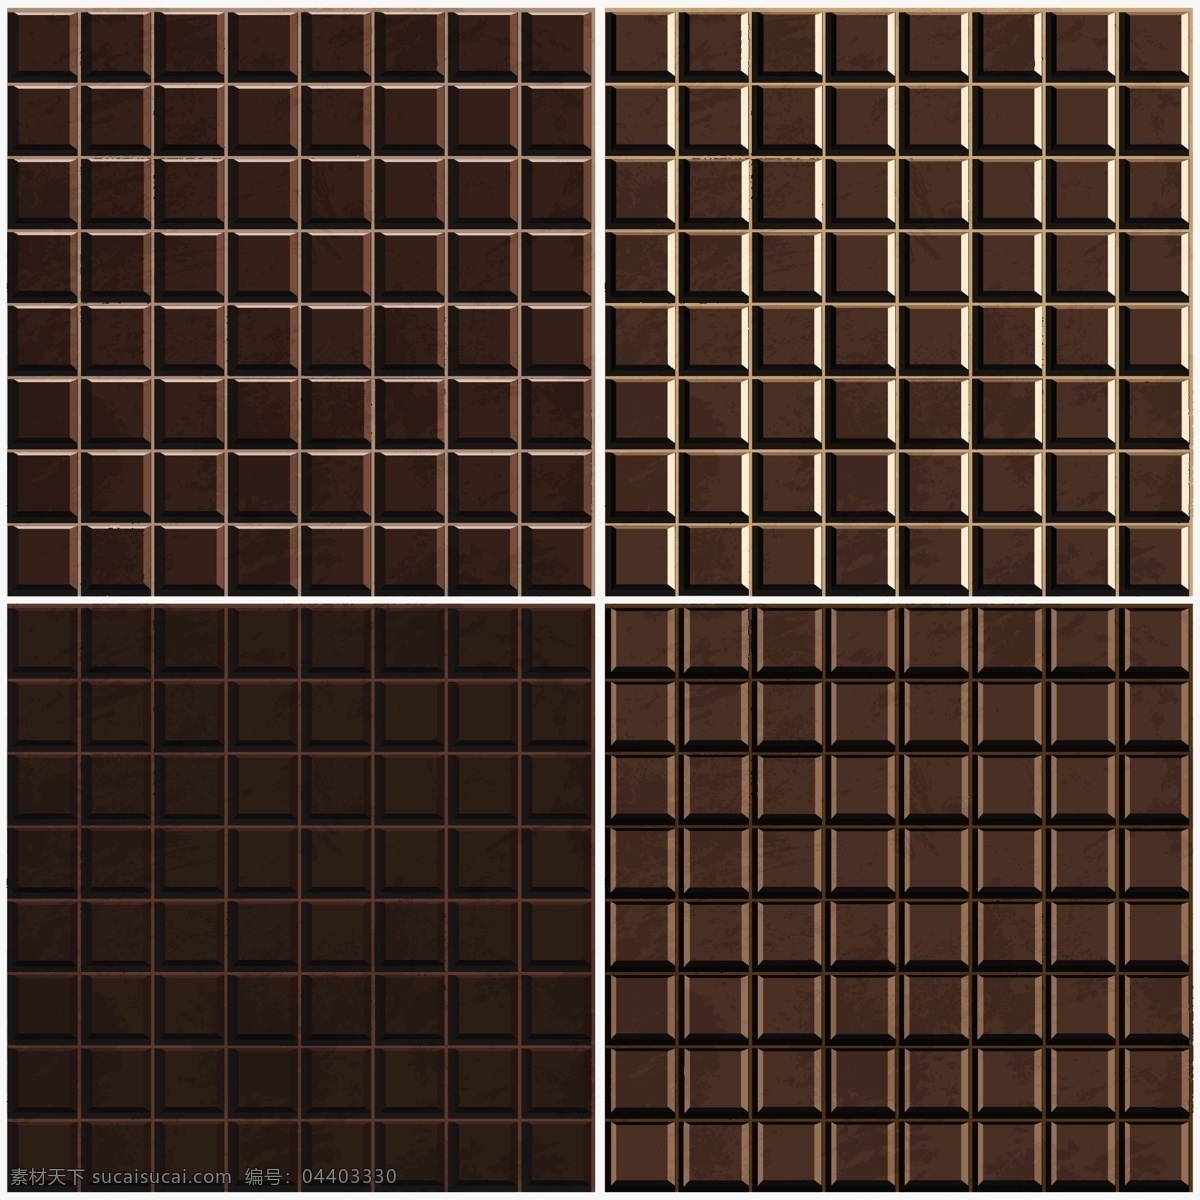 美味巧克力 美味 矢量素材 设计素材 背景素材 巧克力